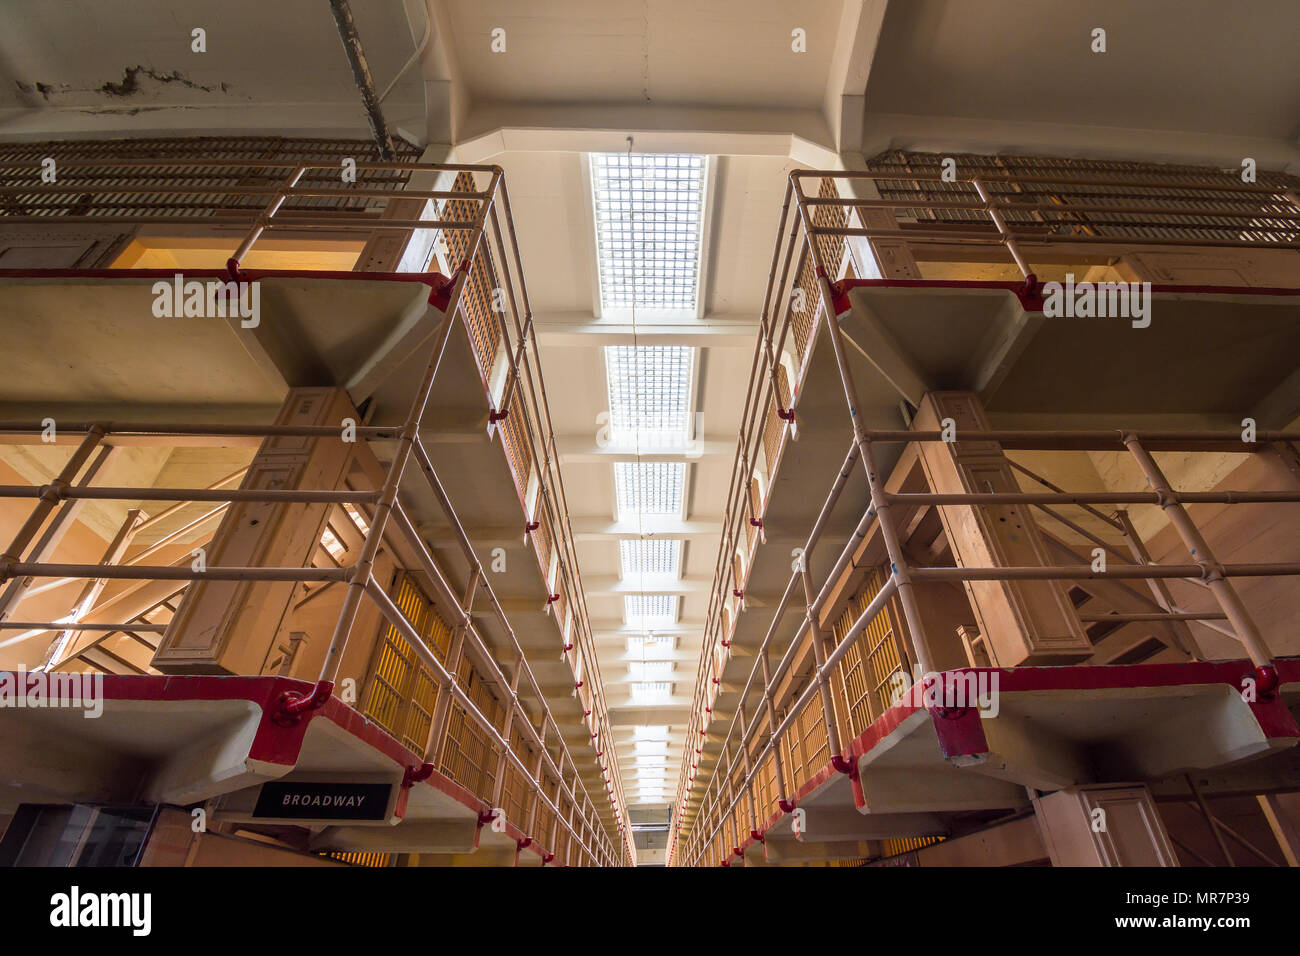 L'intérieur de galeries d'Alcatraz prison, San Francisco, CA, USA. Banque D'Images